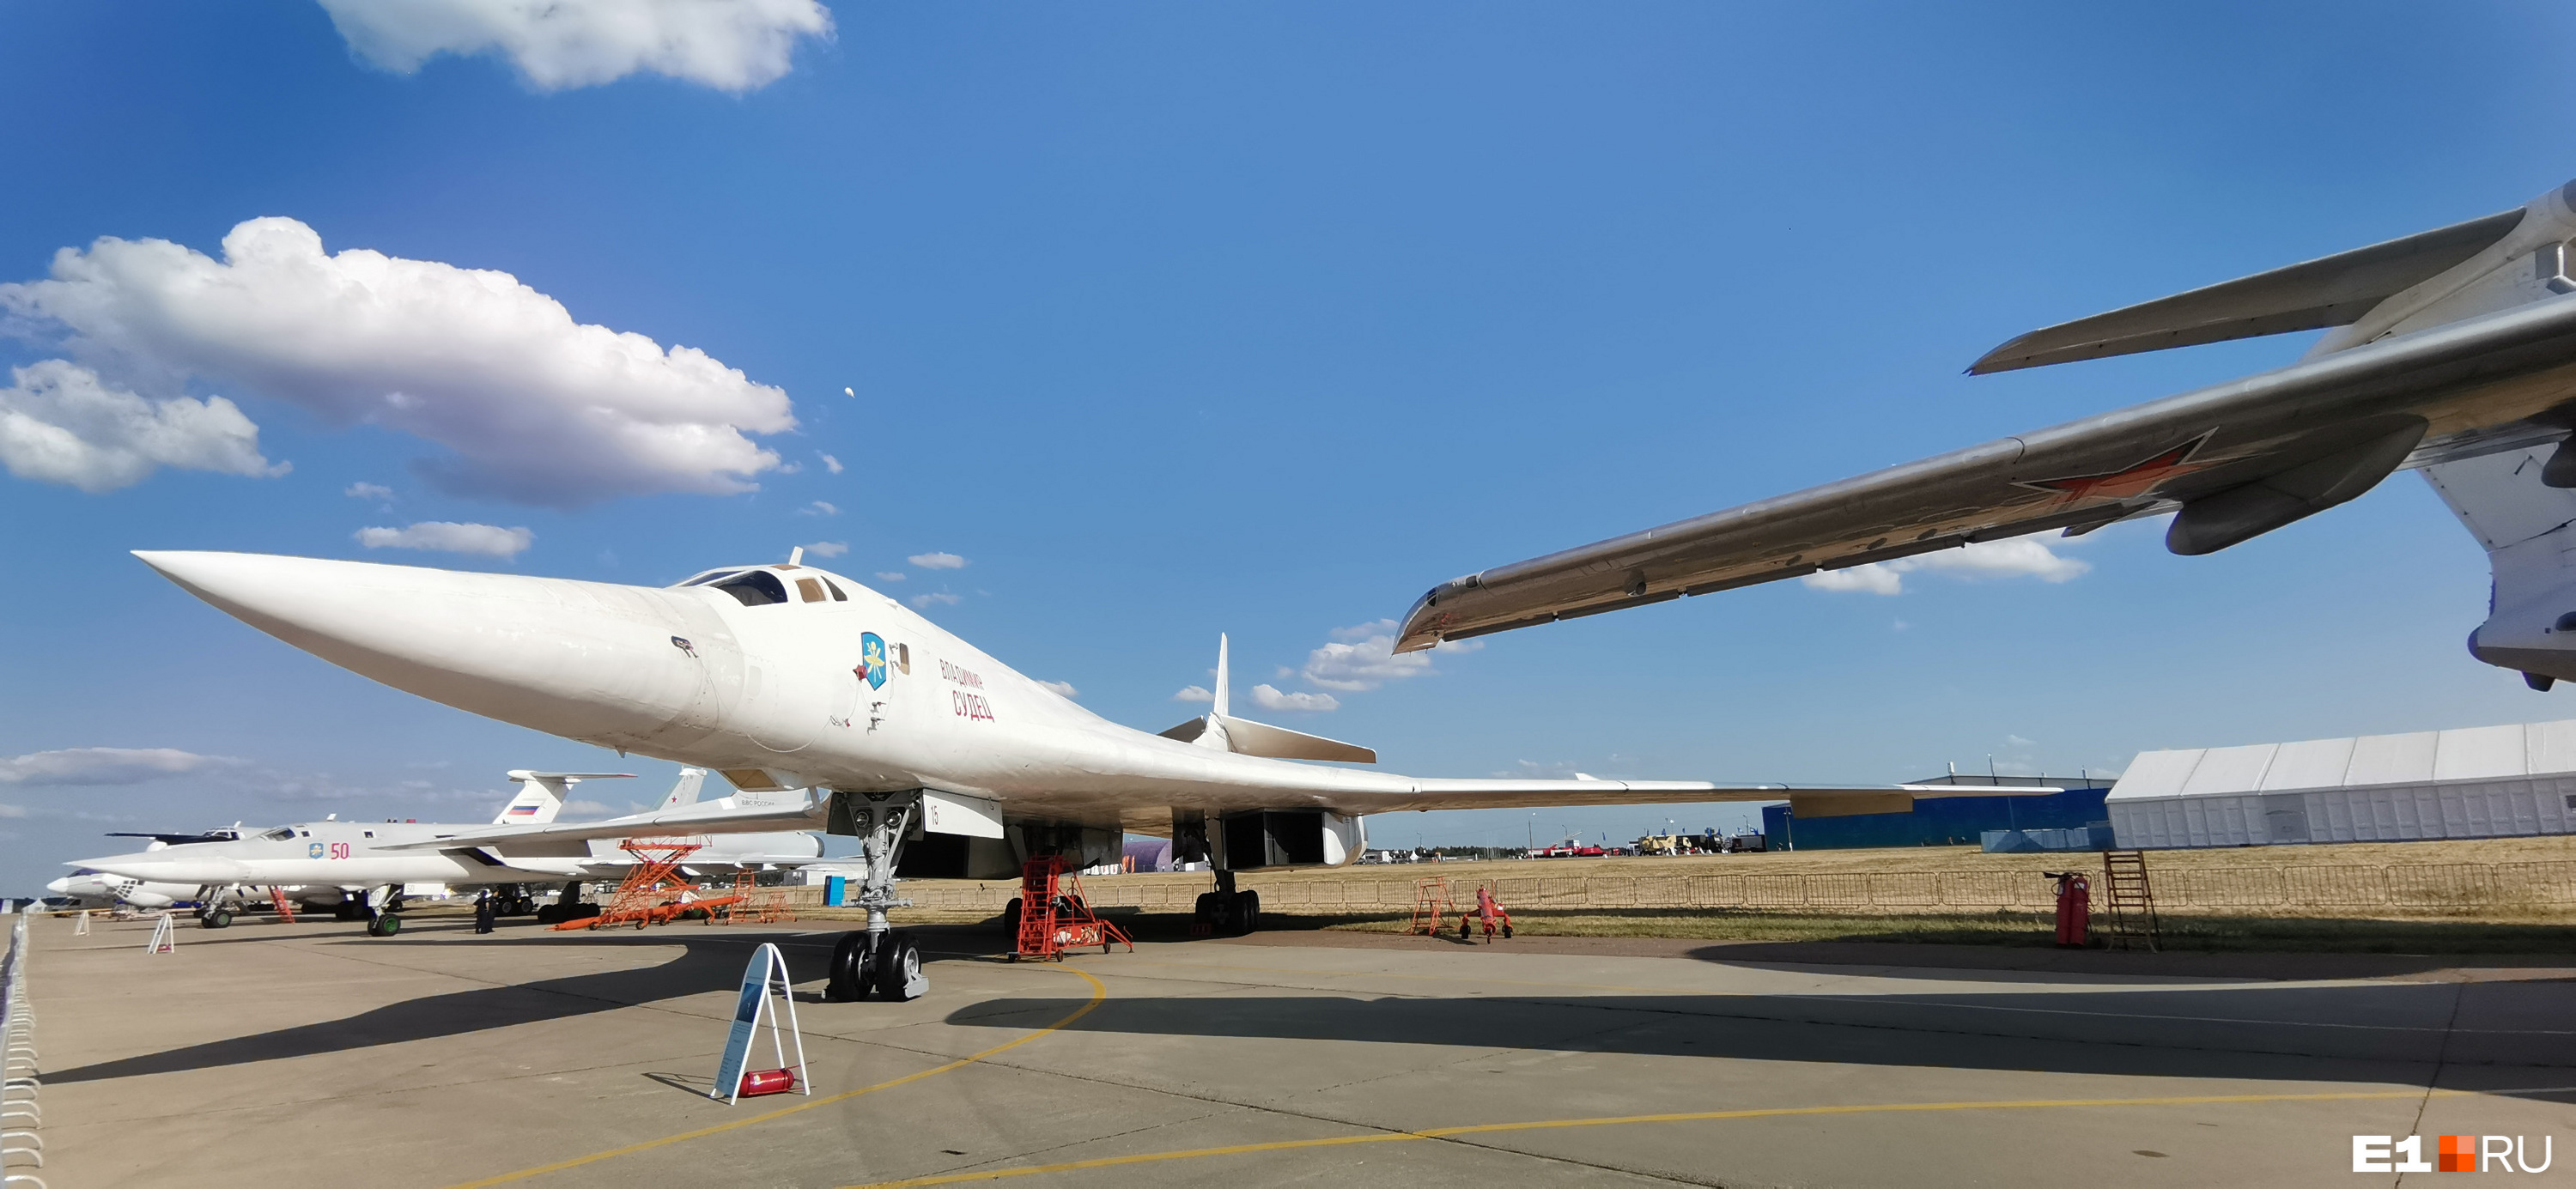 Ту-160 («изделие 70») — сверхзвуковой стратегический бомбардировщик-ракетоносец с крылом изменяемой стреловидности